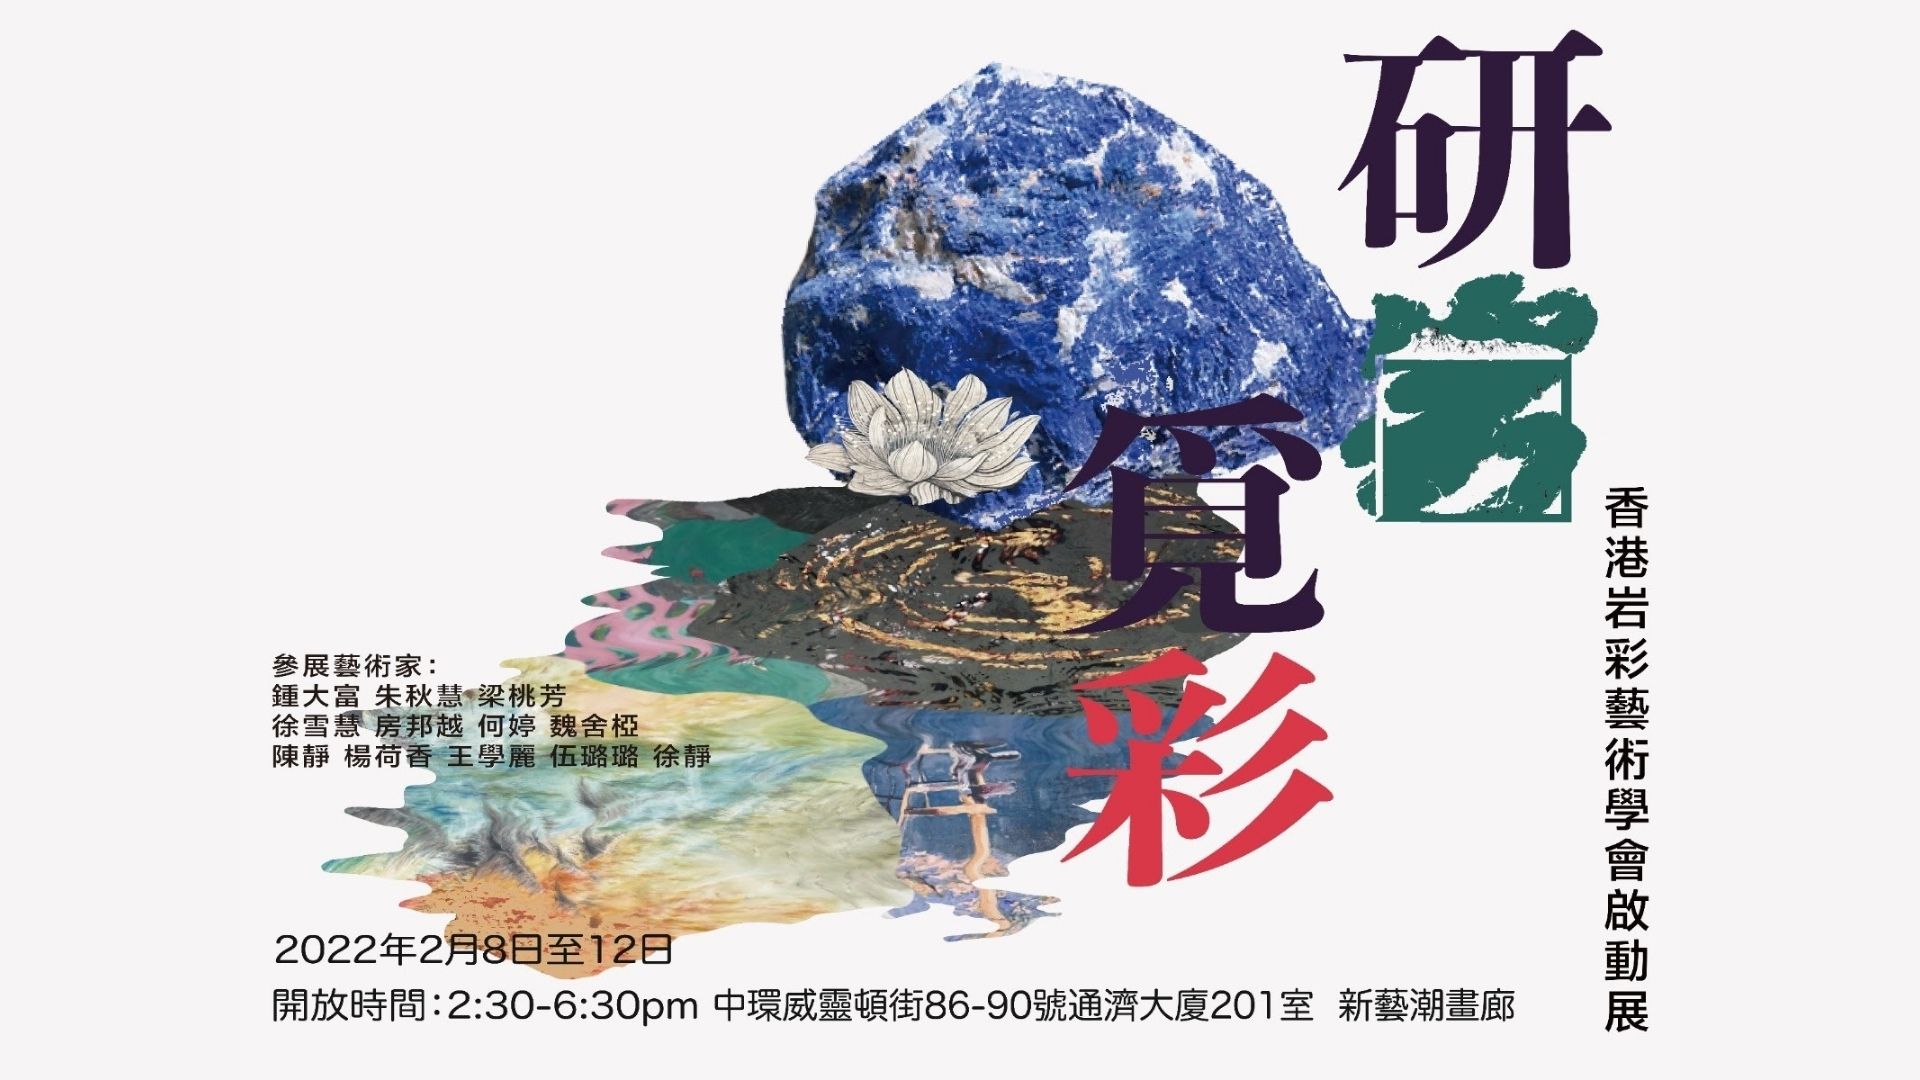 看展覽 | 香港岩彩藝術學會​2月舉辦起動展《研岩覓彩》 展出驚艷岩彩藝術作品